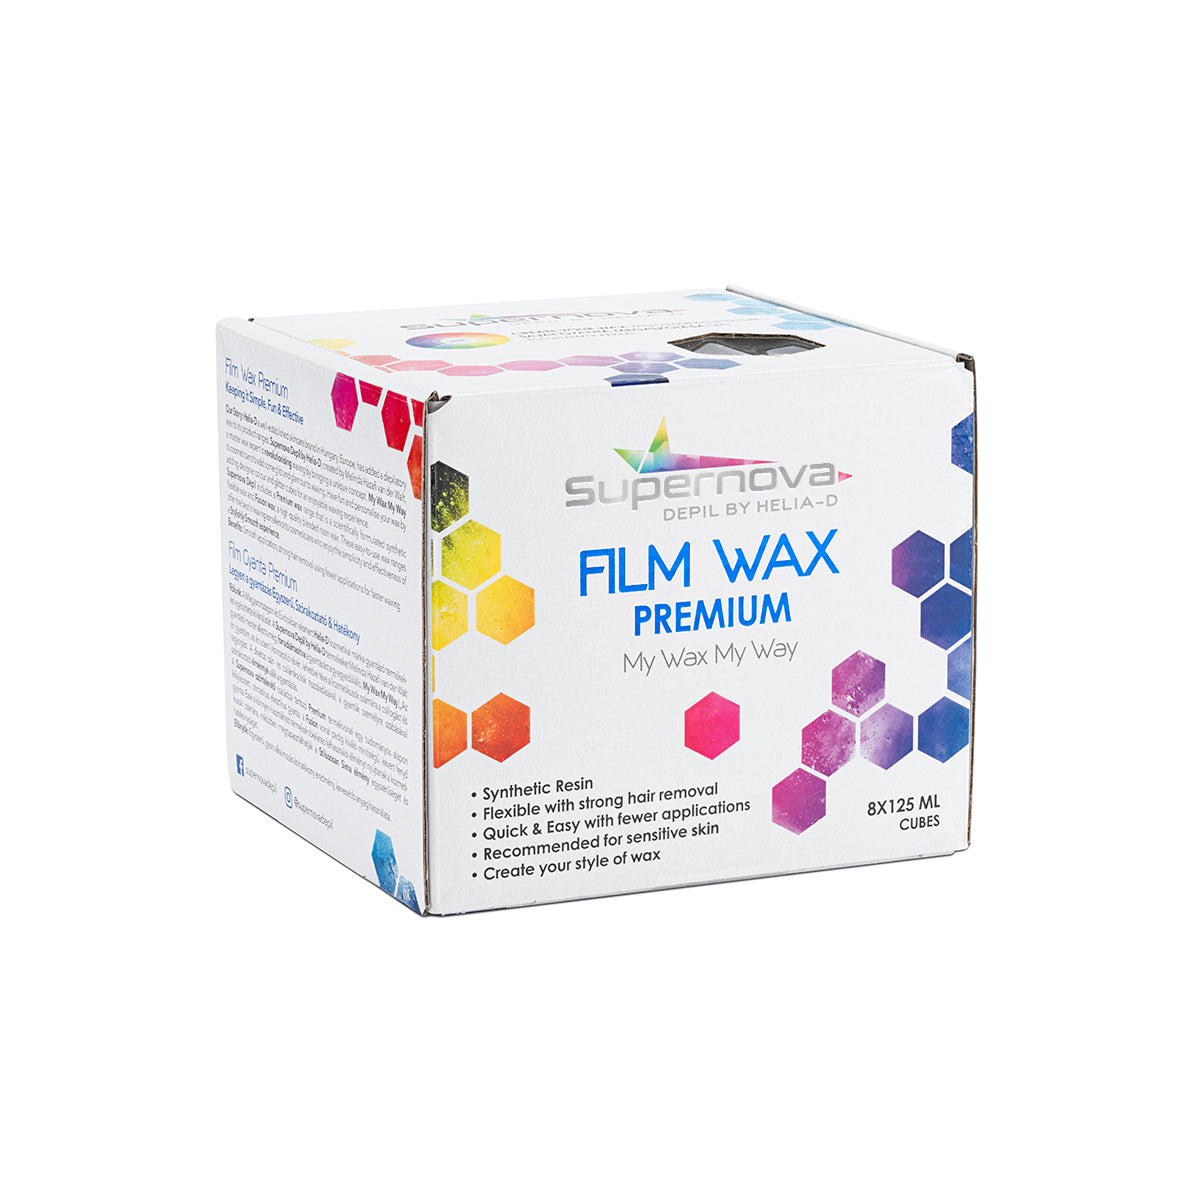 Film Wax Premium